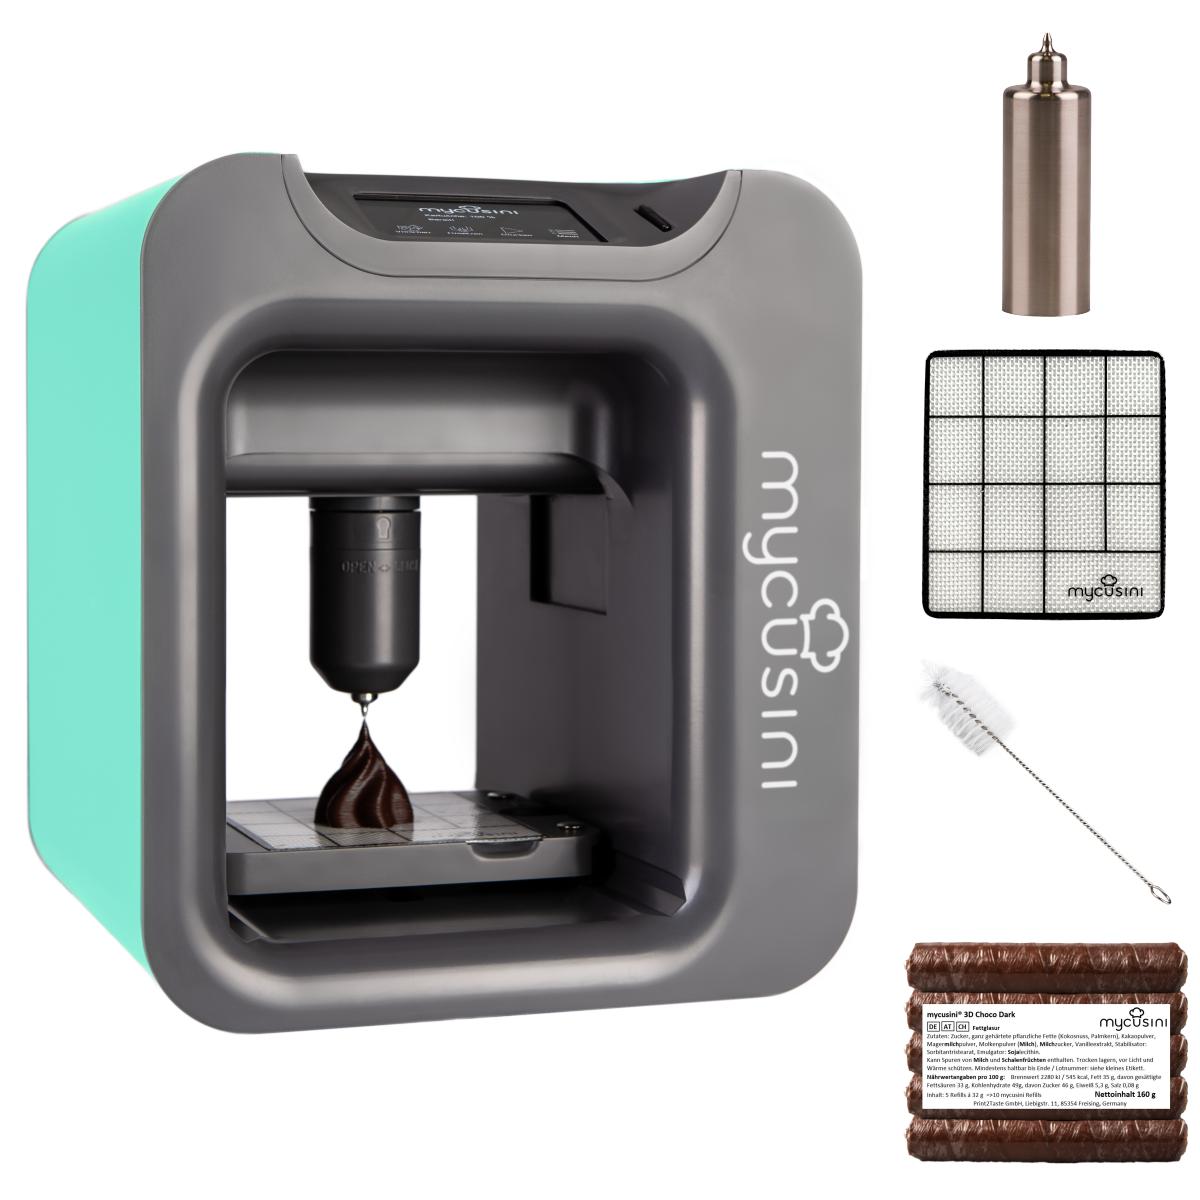 Stampante 3D per cioccolato mycusini® 2.0 che include oltre 1.000 modelli 3D  e 3D Choco